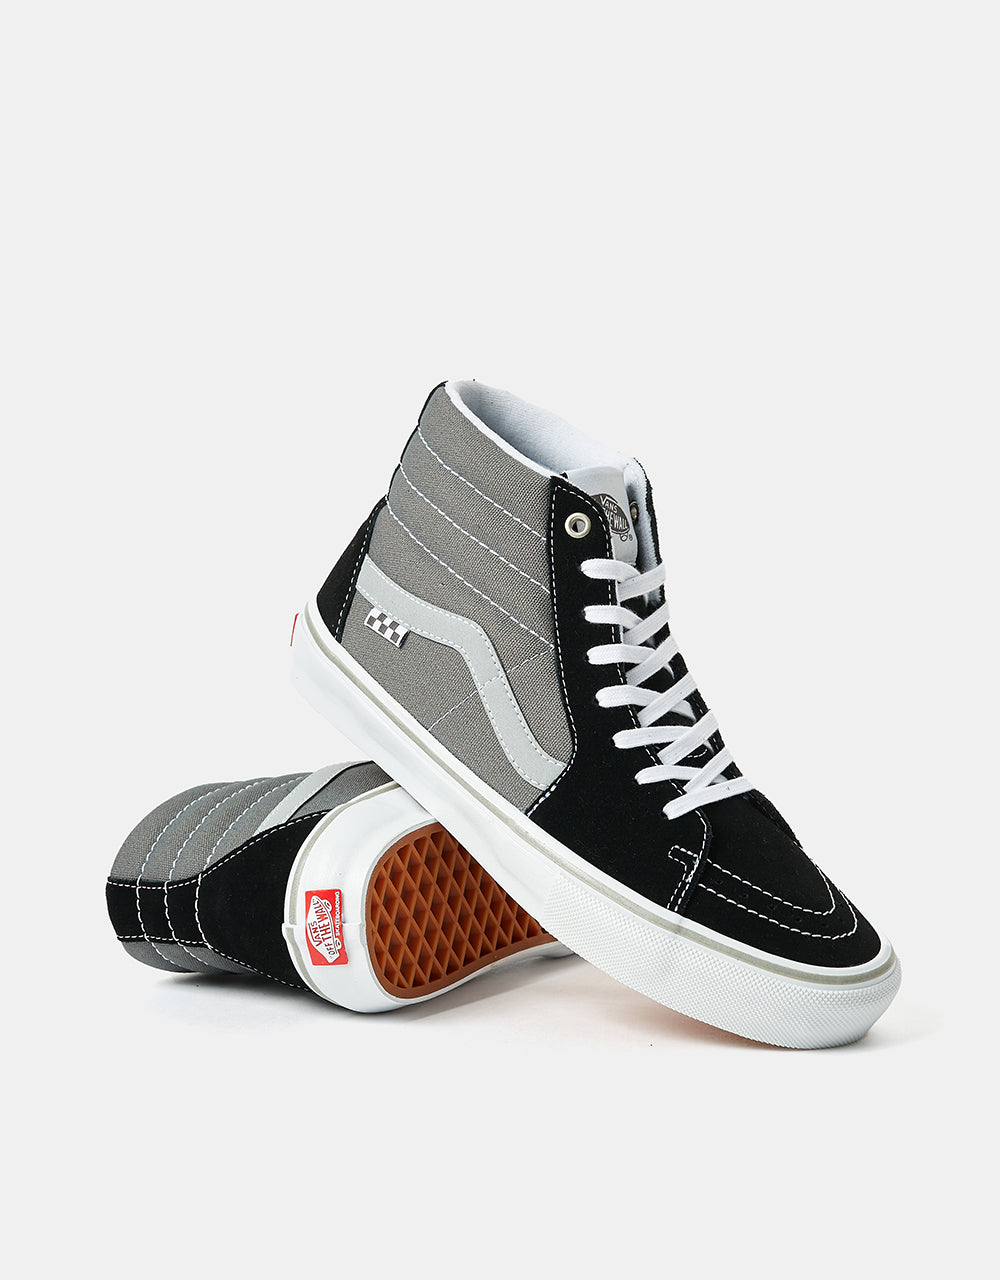 Vans Skate SK8-Hi Shoes - (Reflective) Black/Grey